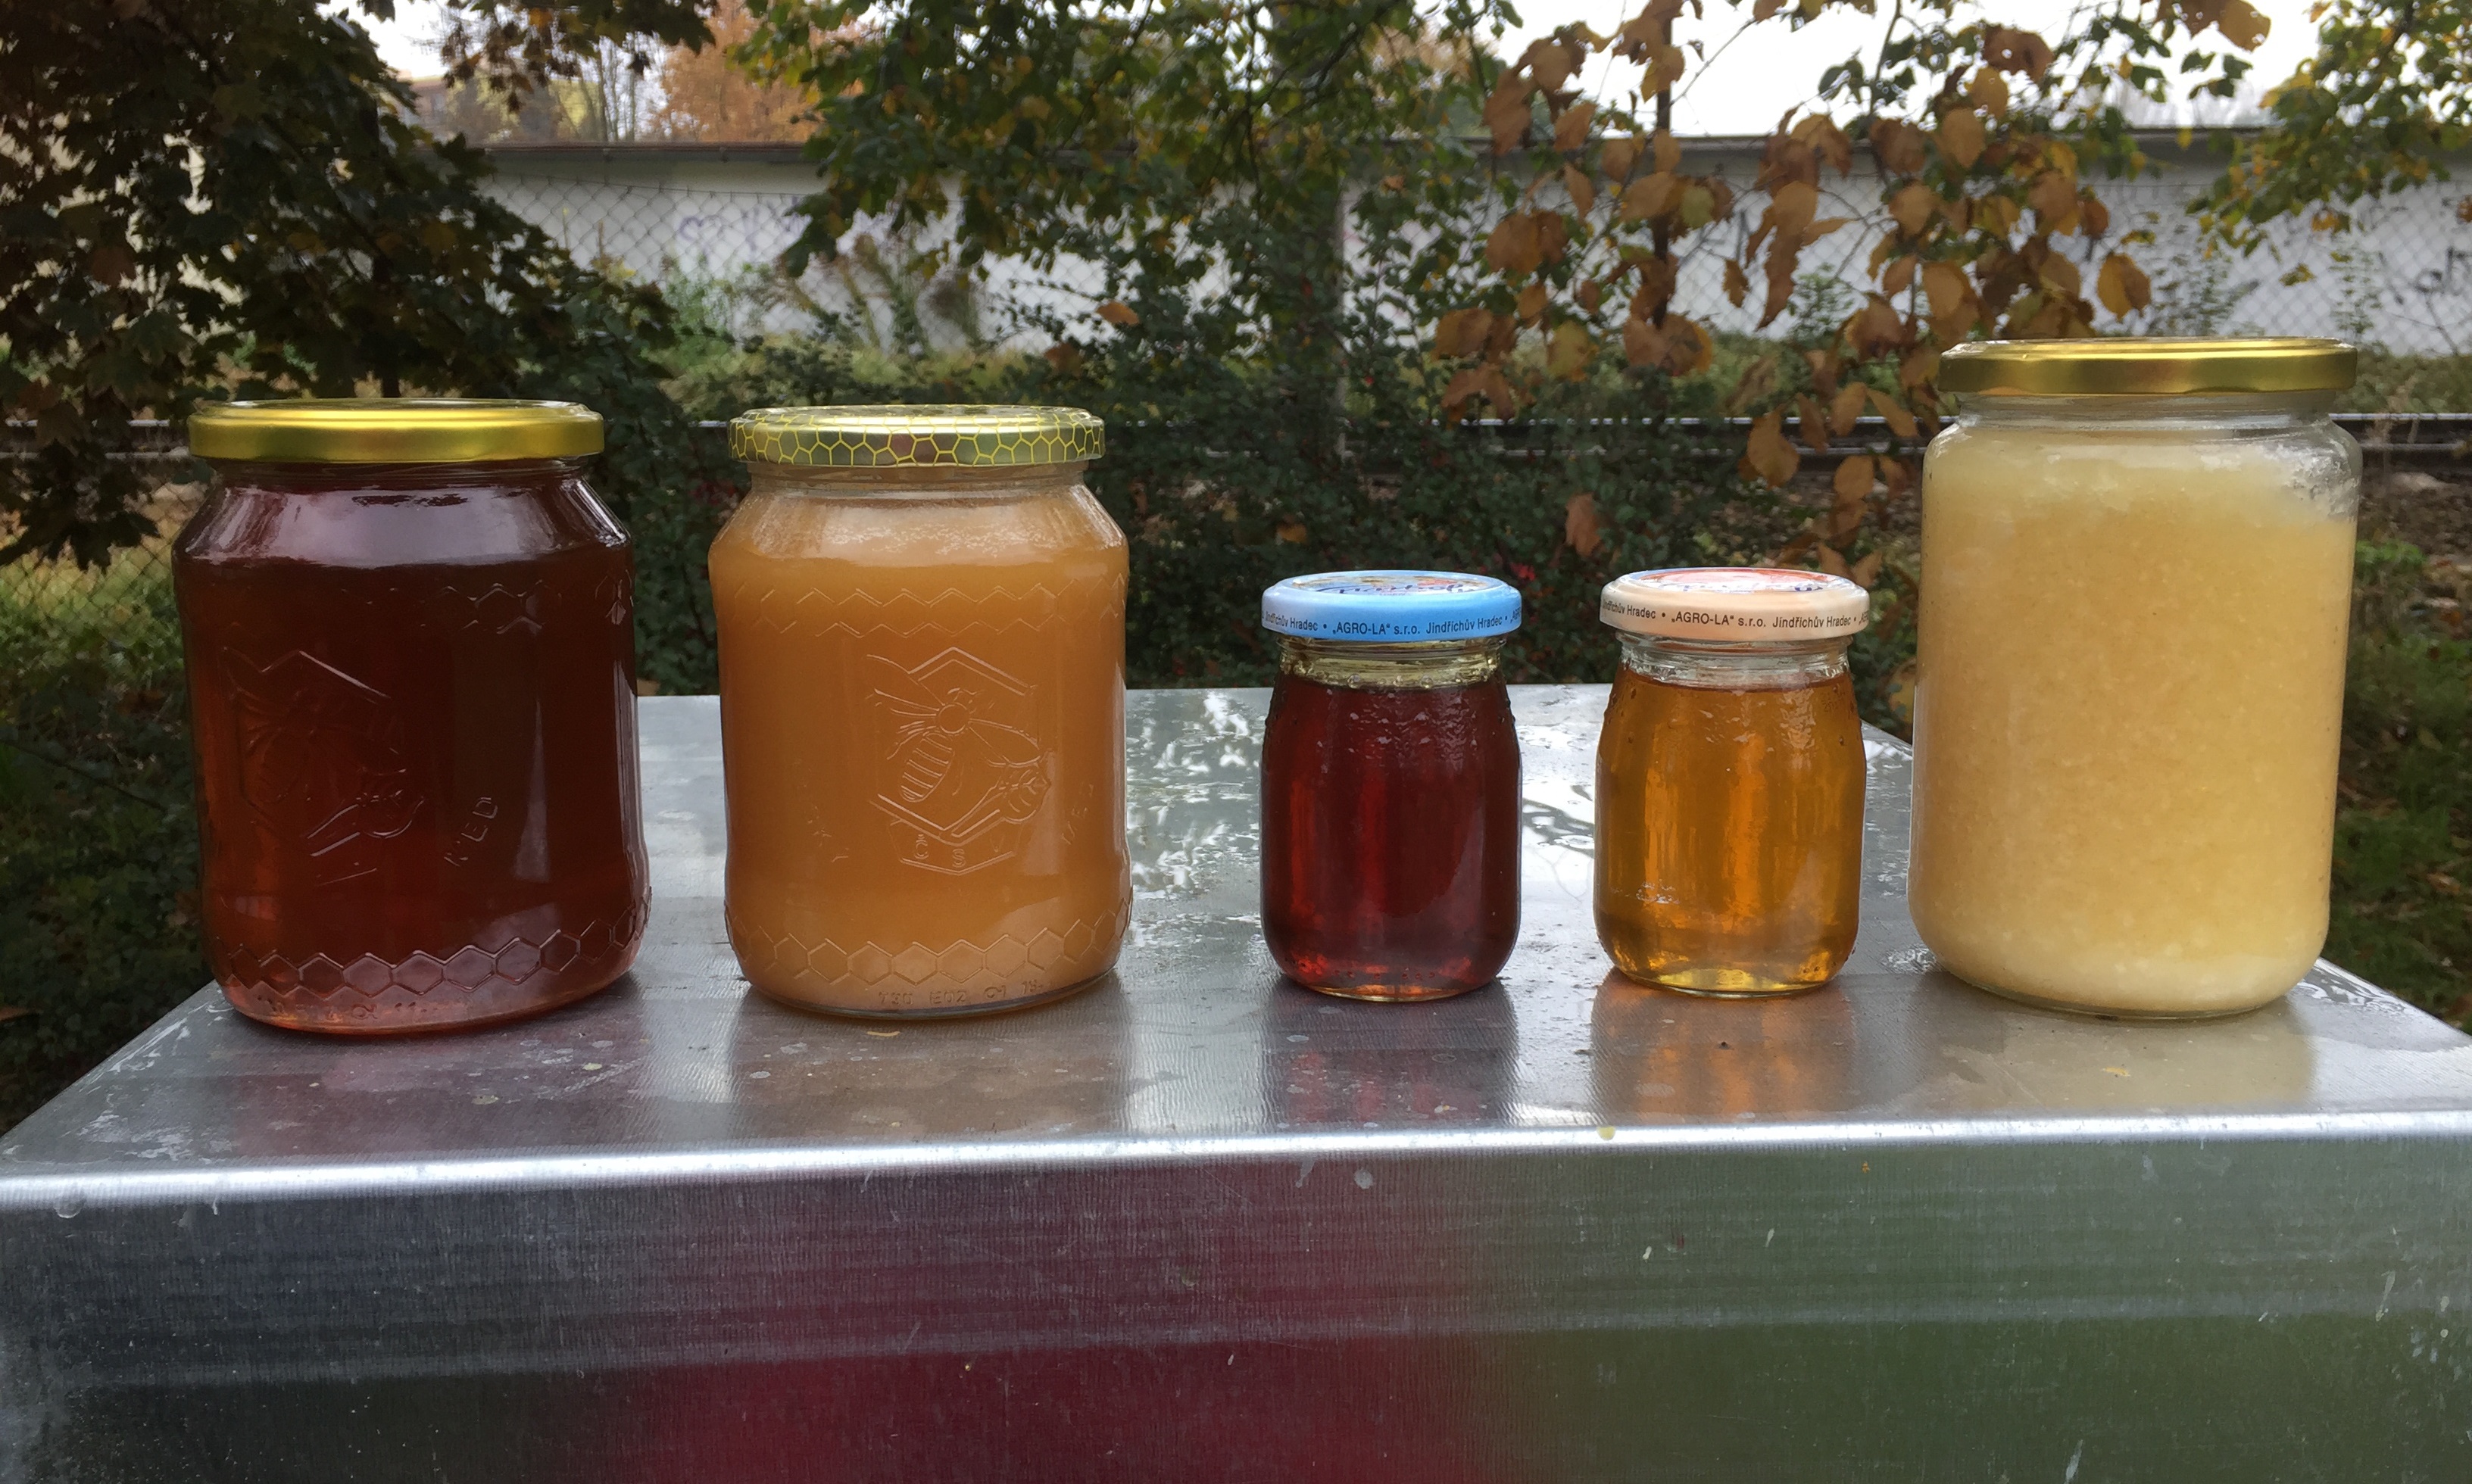 Zleva med smíšený (z nektaru a medovice), lipový med nektarový, jitrocelový sirup, pampeliškový sirup (nazývaný nesprávně pampeliškový med) a předčasně vytočený nektarový med, který hrubě zkrystalizoval a začal kvasit